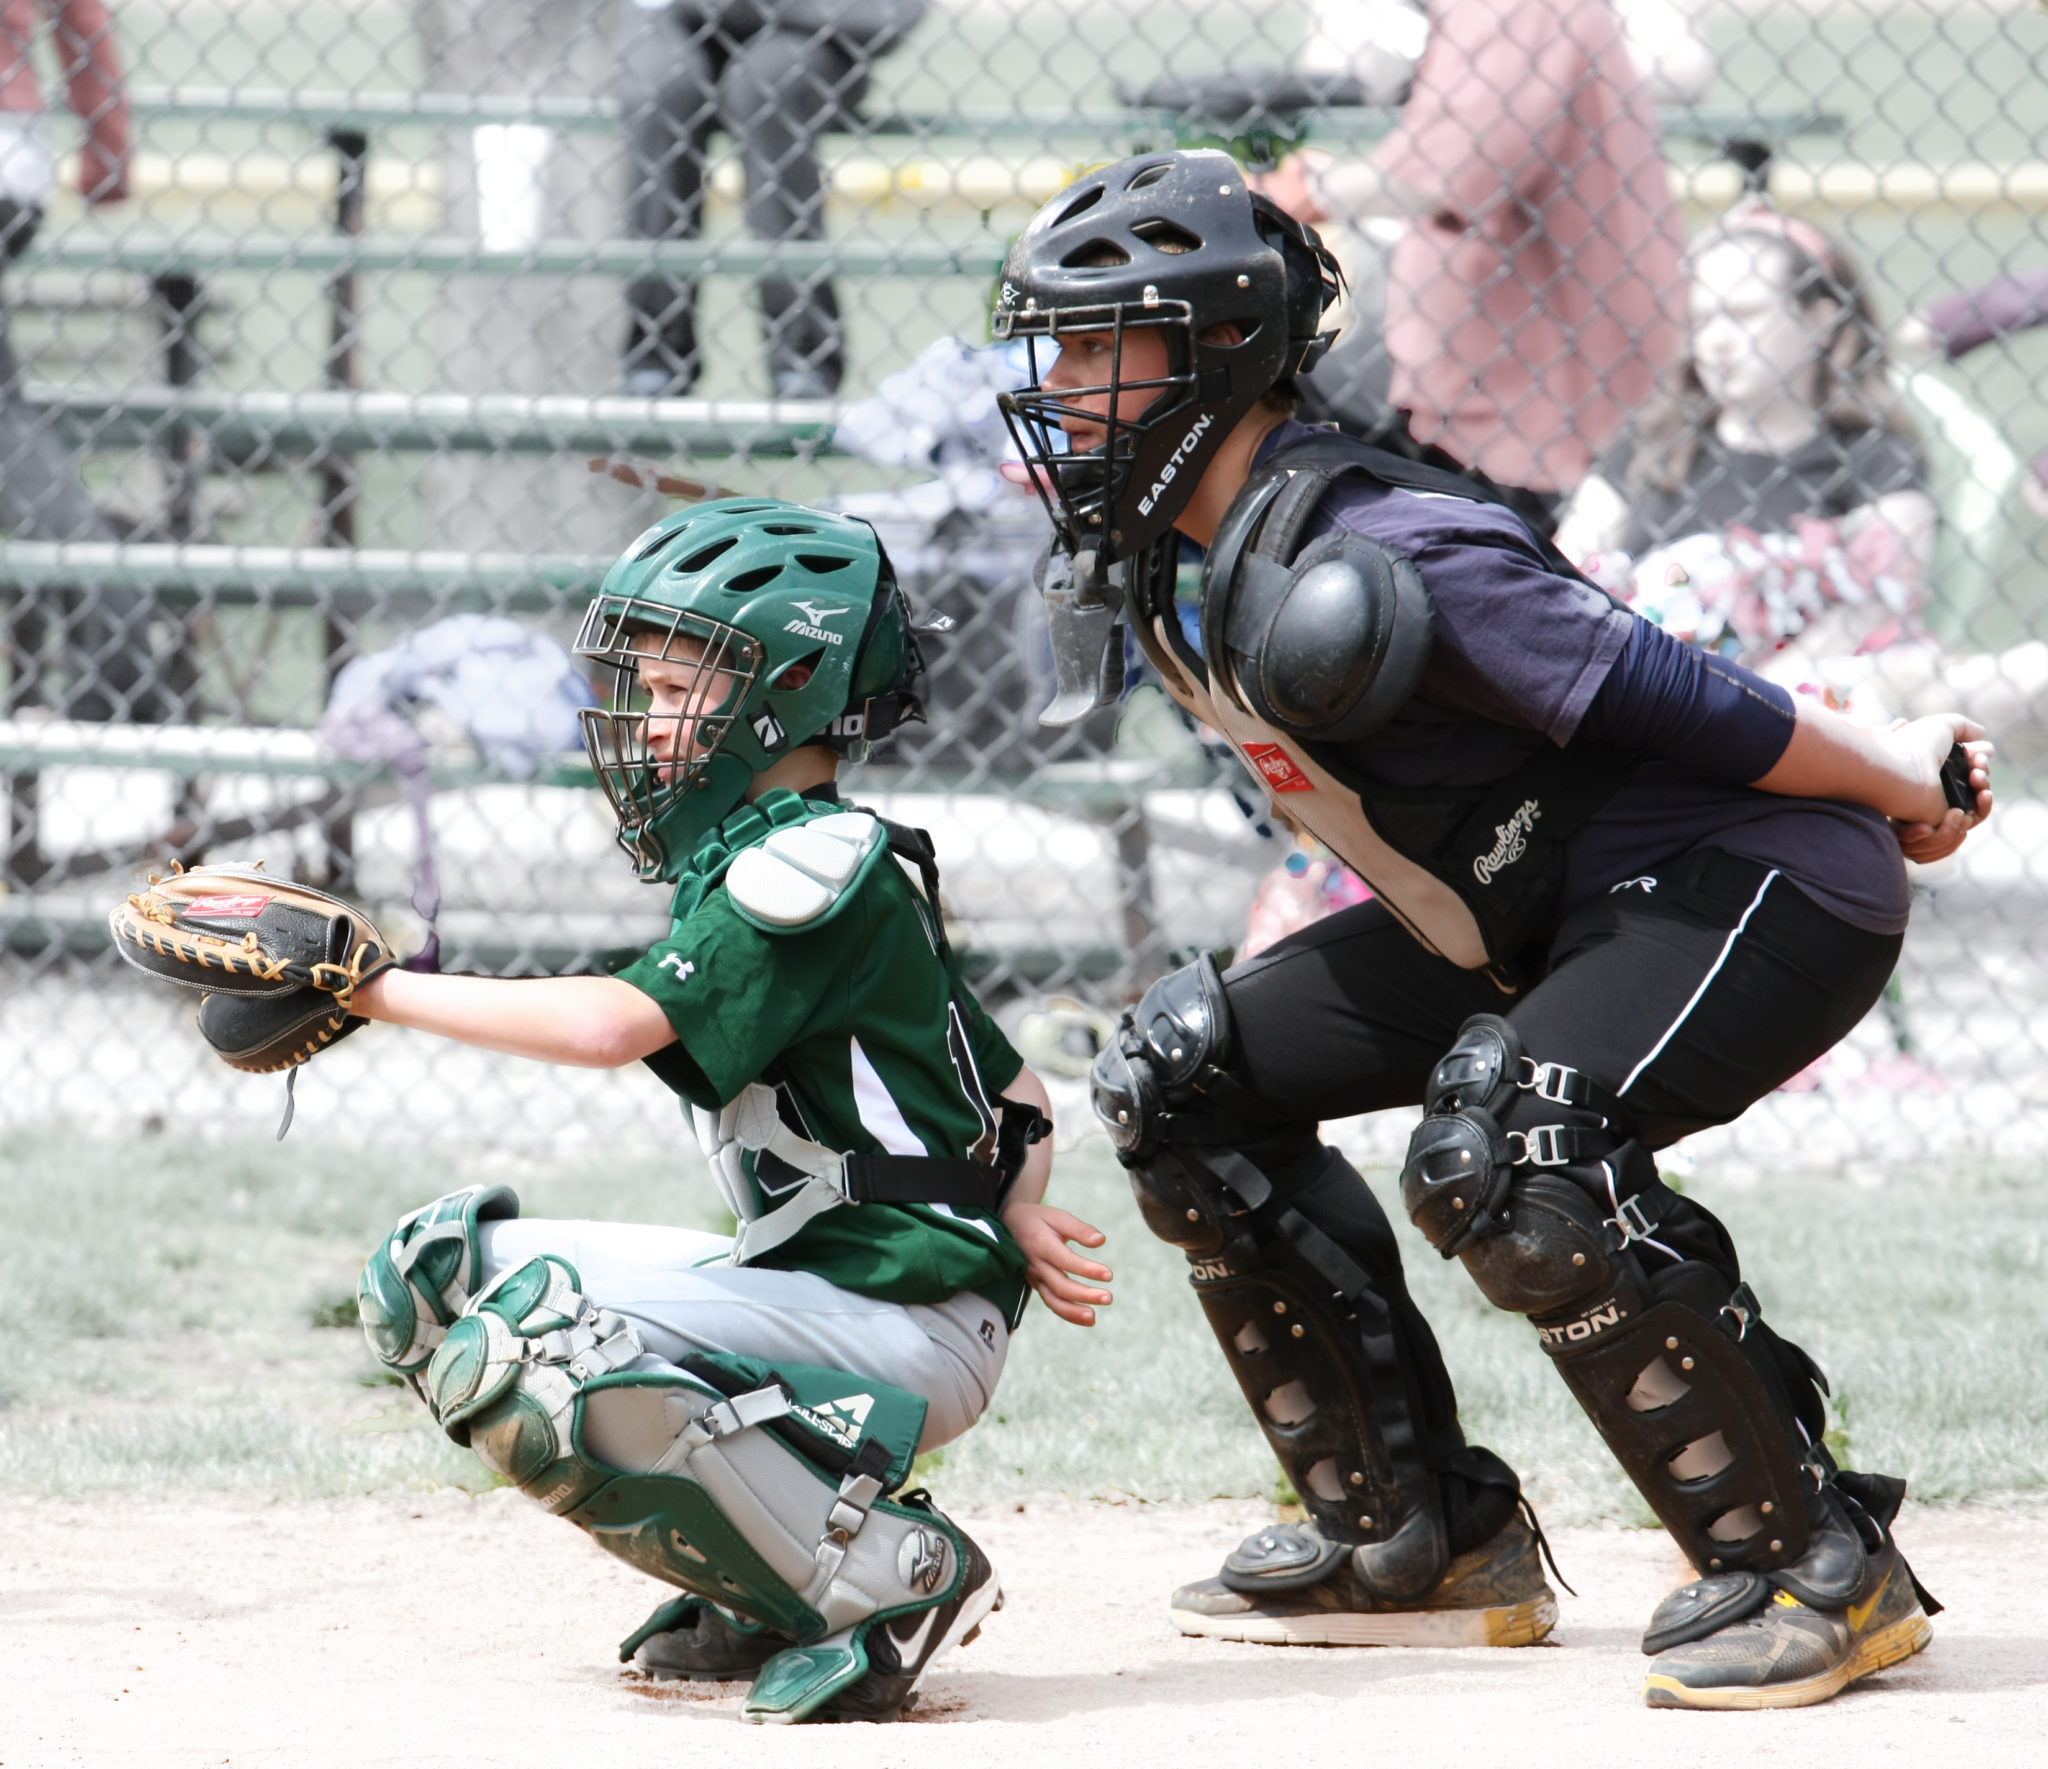 Umpires – Zionsville Little League